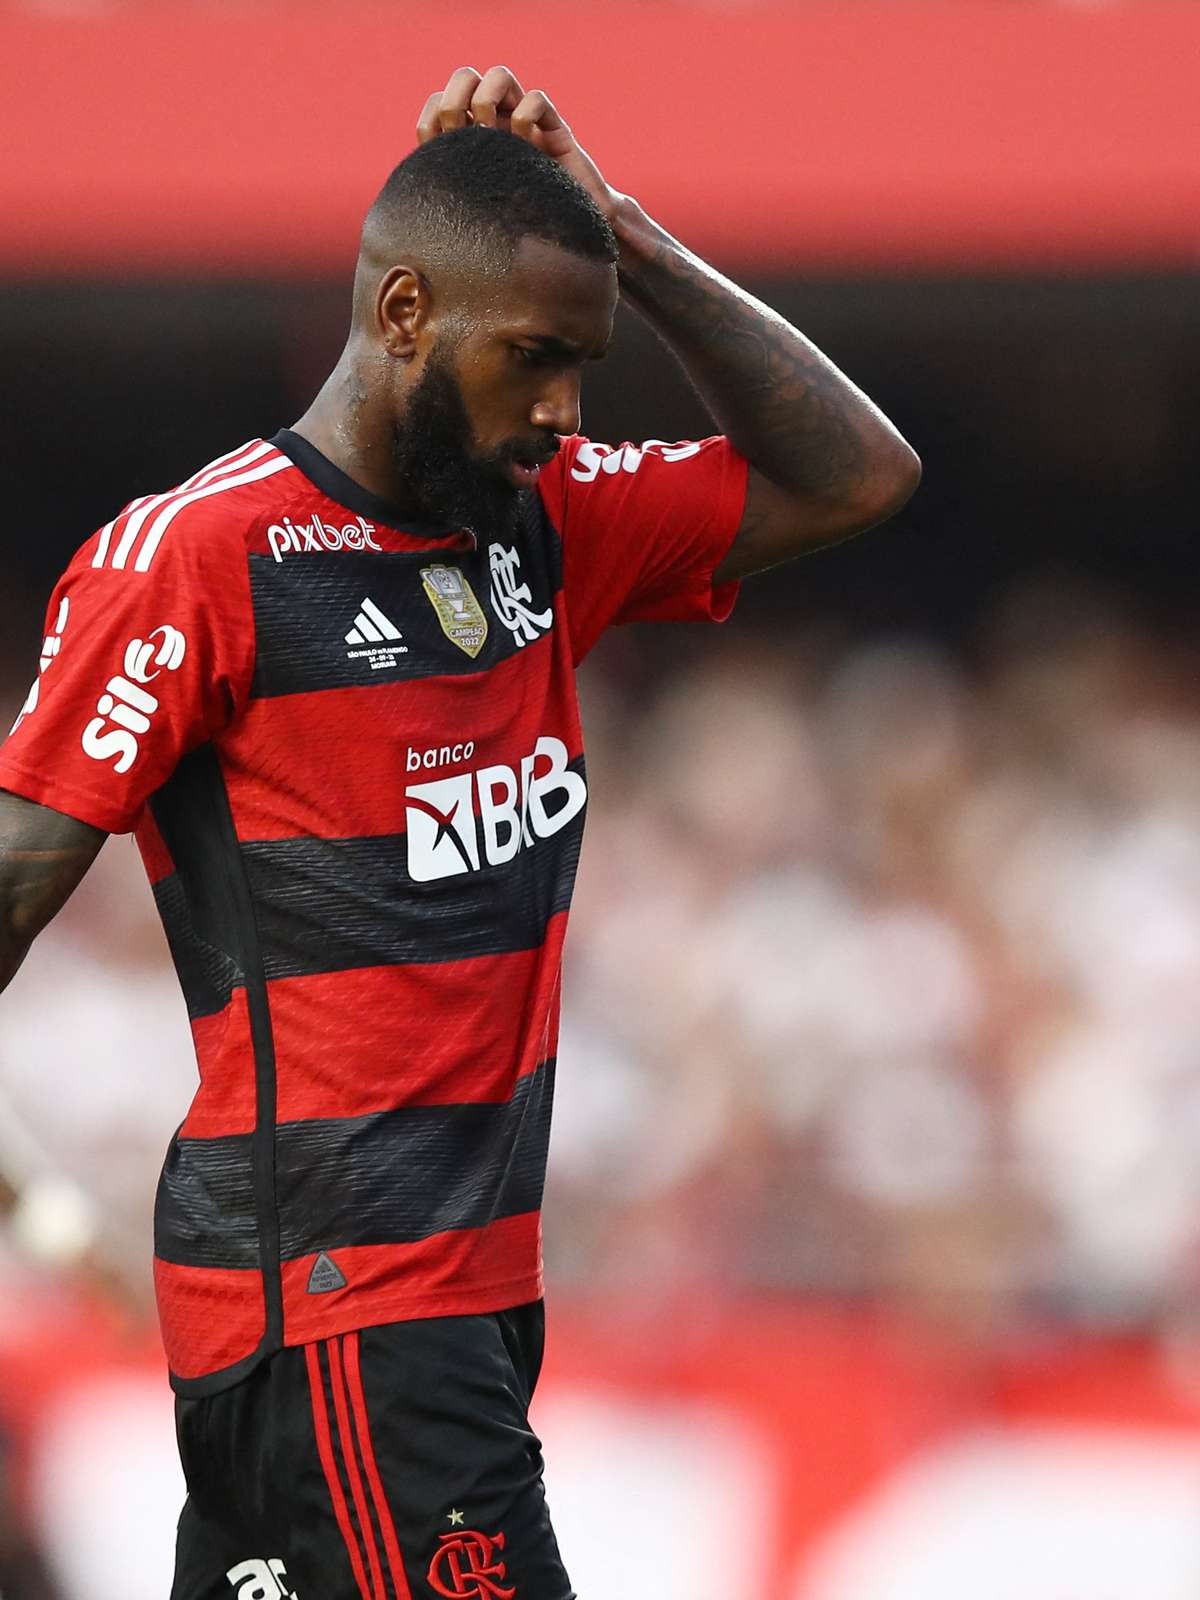 Flamengo x Corinthians: os memes do jogo no Maracanã - Gazeta